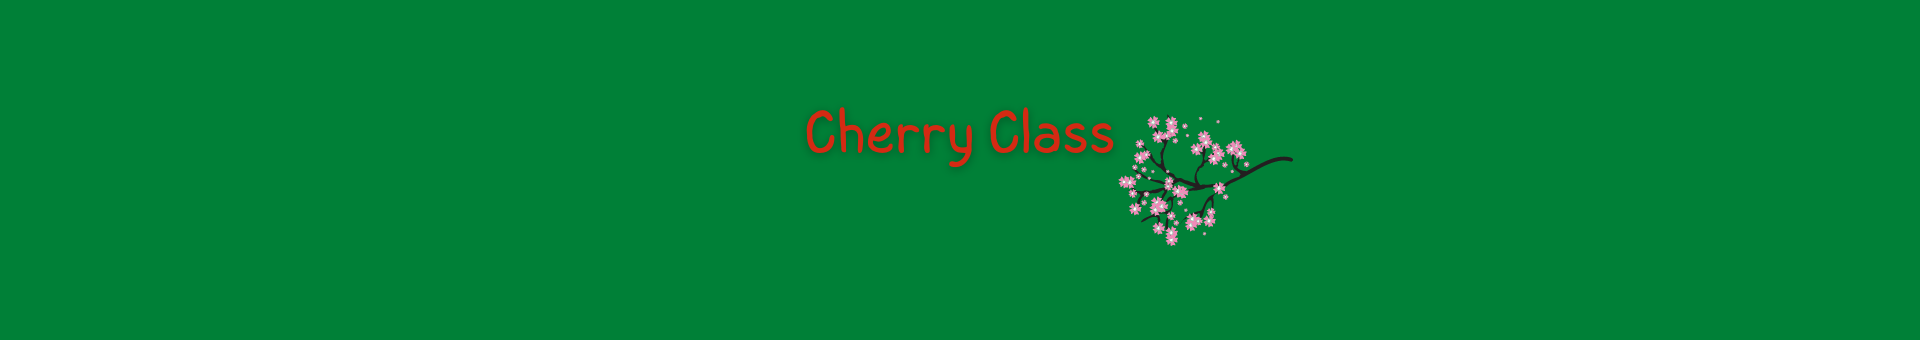 Cherry Class